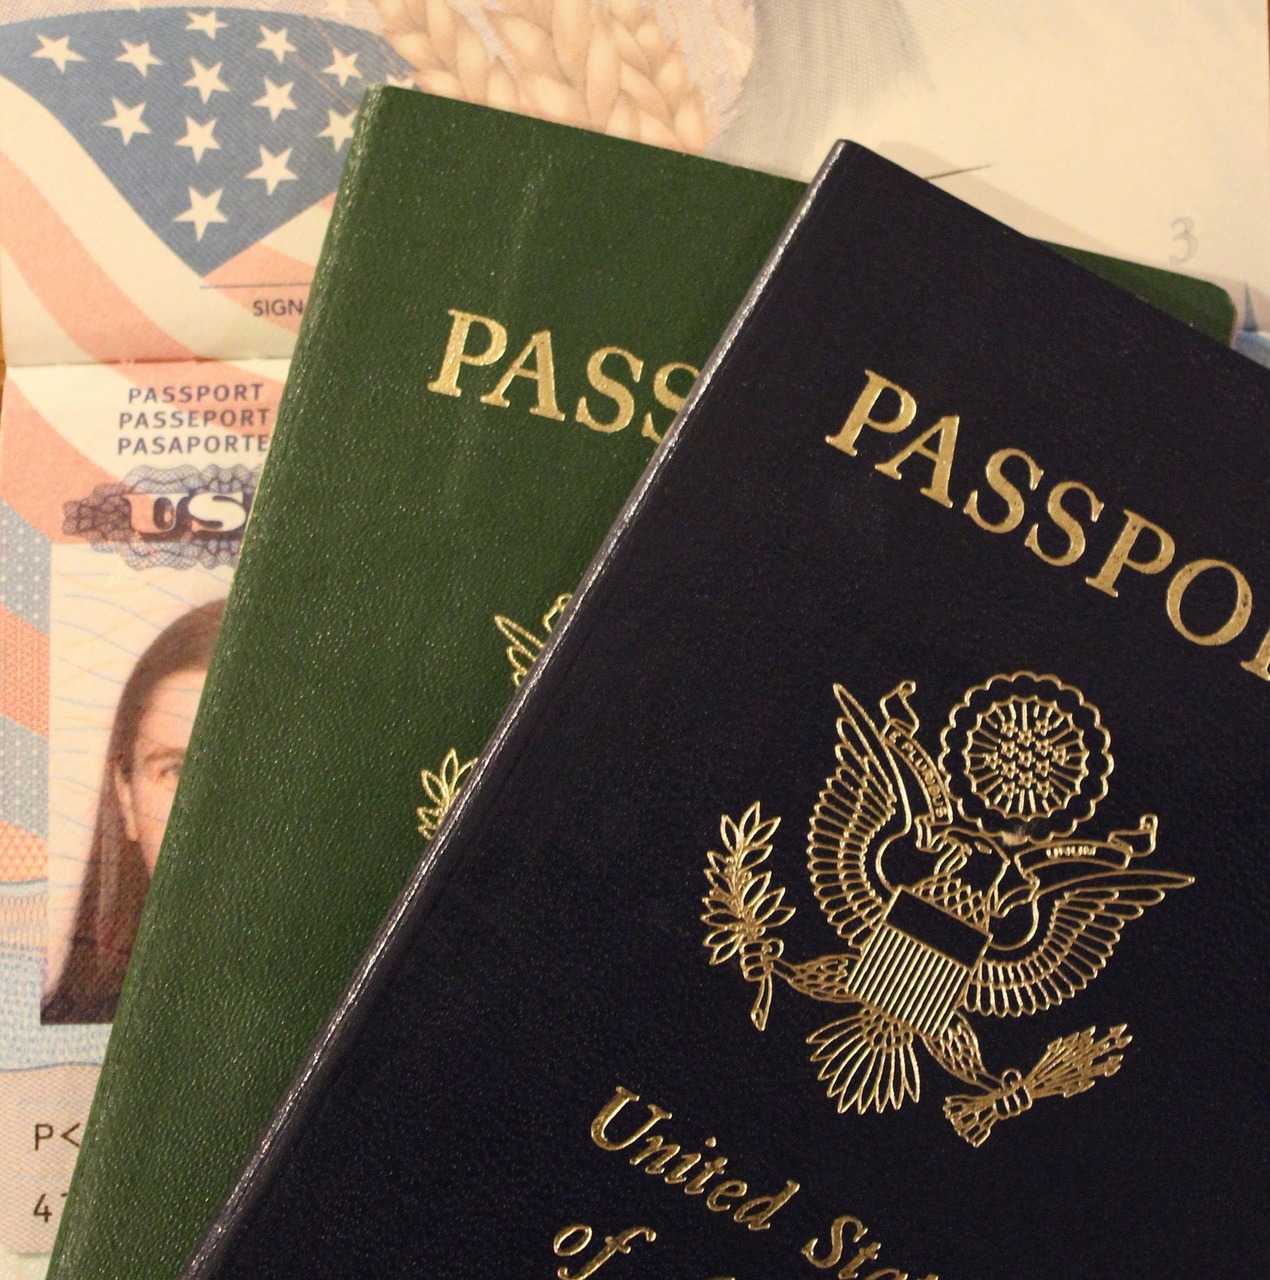 Two US Passports